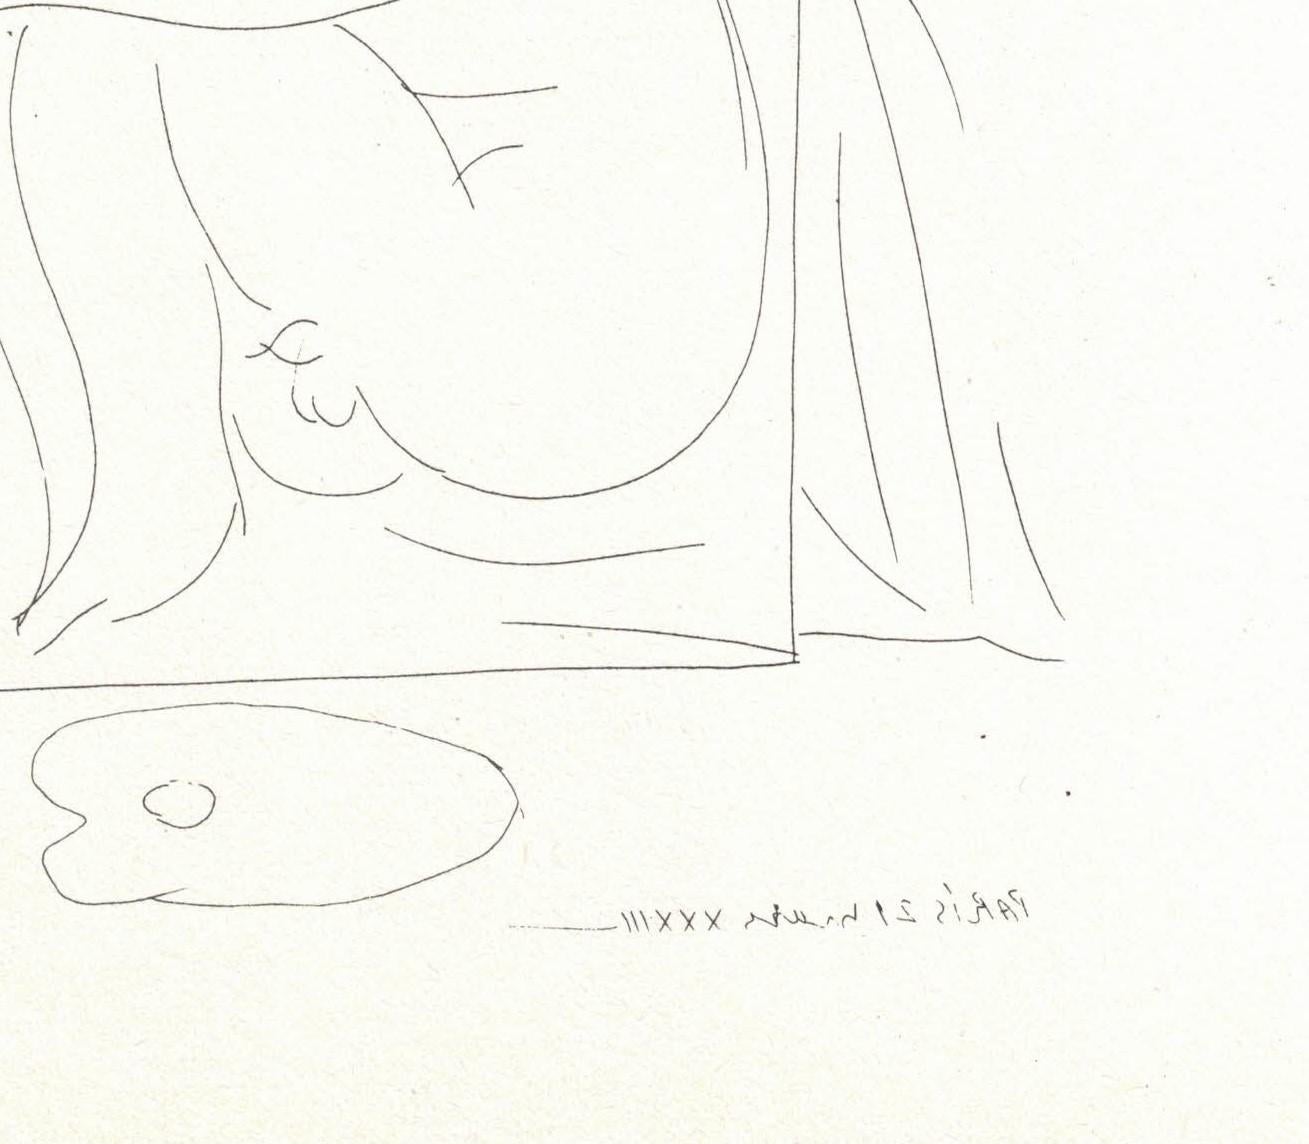 Plaque vintage des années 1970 en noir et blanc d'après l'original de Pablo Picasso pour la Suite Vollard. Cette œuvre est très recherchée en raison de son ancienneté et de son importance artistique tant pour Picasso que pour Ambroise Vollard.